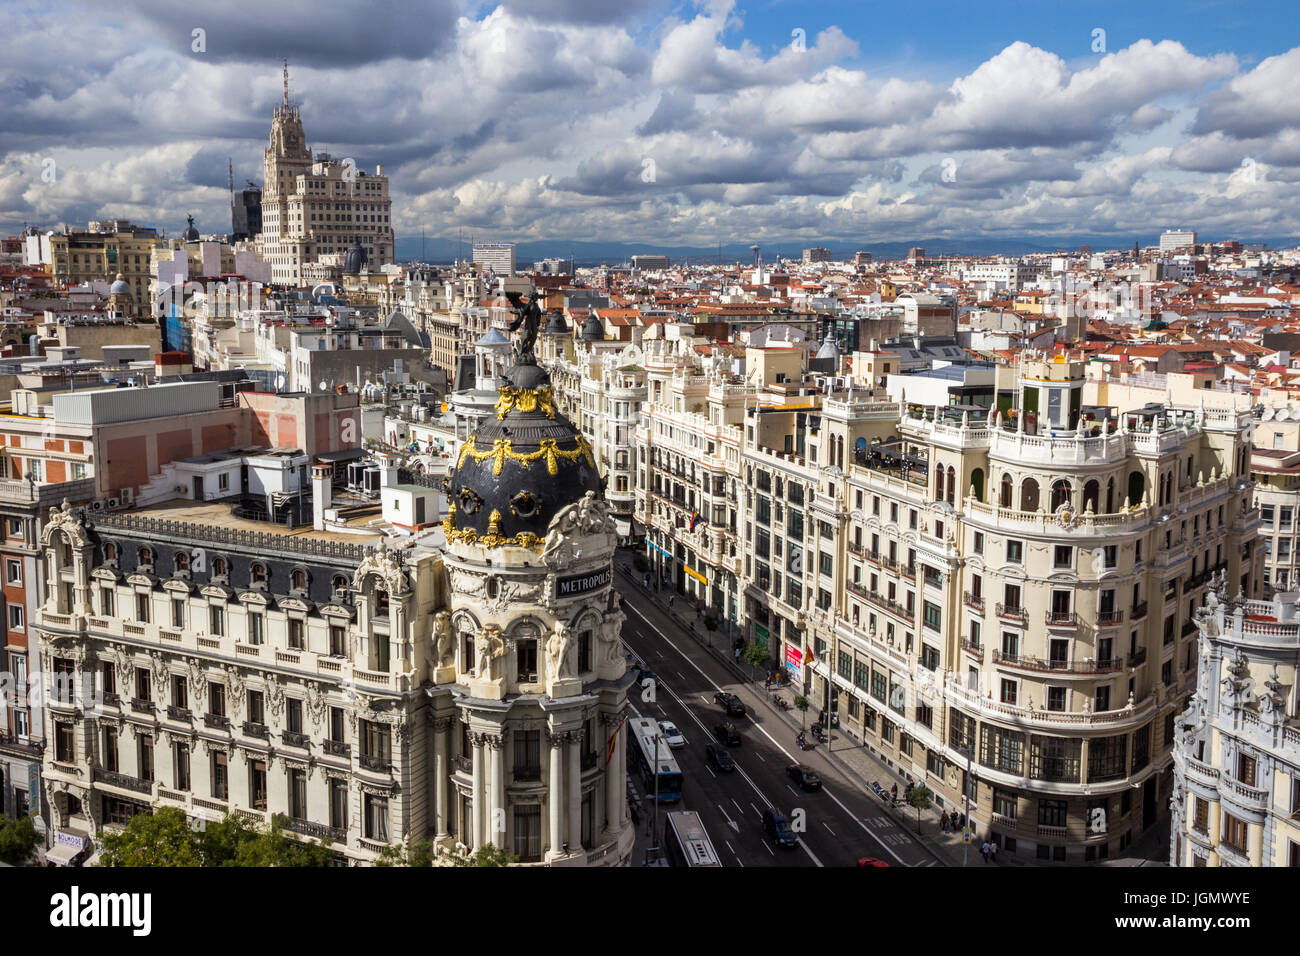 MADRID, ESPAGNE - 10 OCT 2014 : vue panoramique sur la Gran Via, la principale rue commerçante de Madrid, Espagne. Banque D'Images